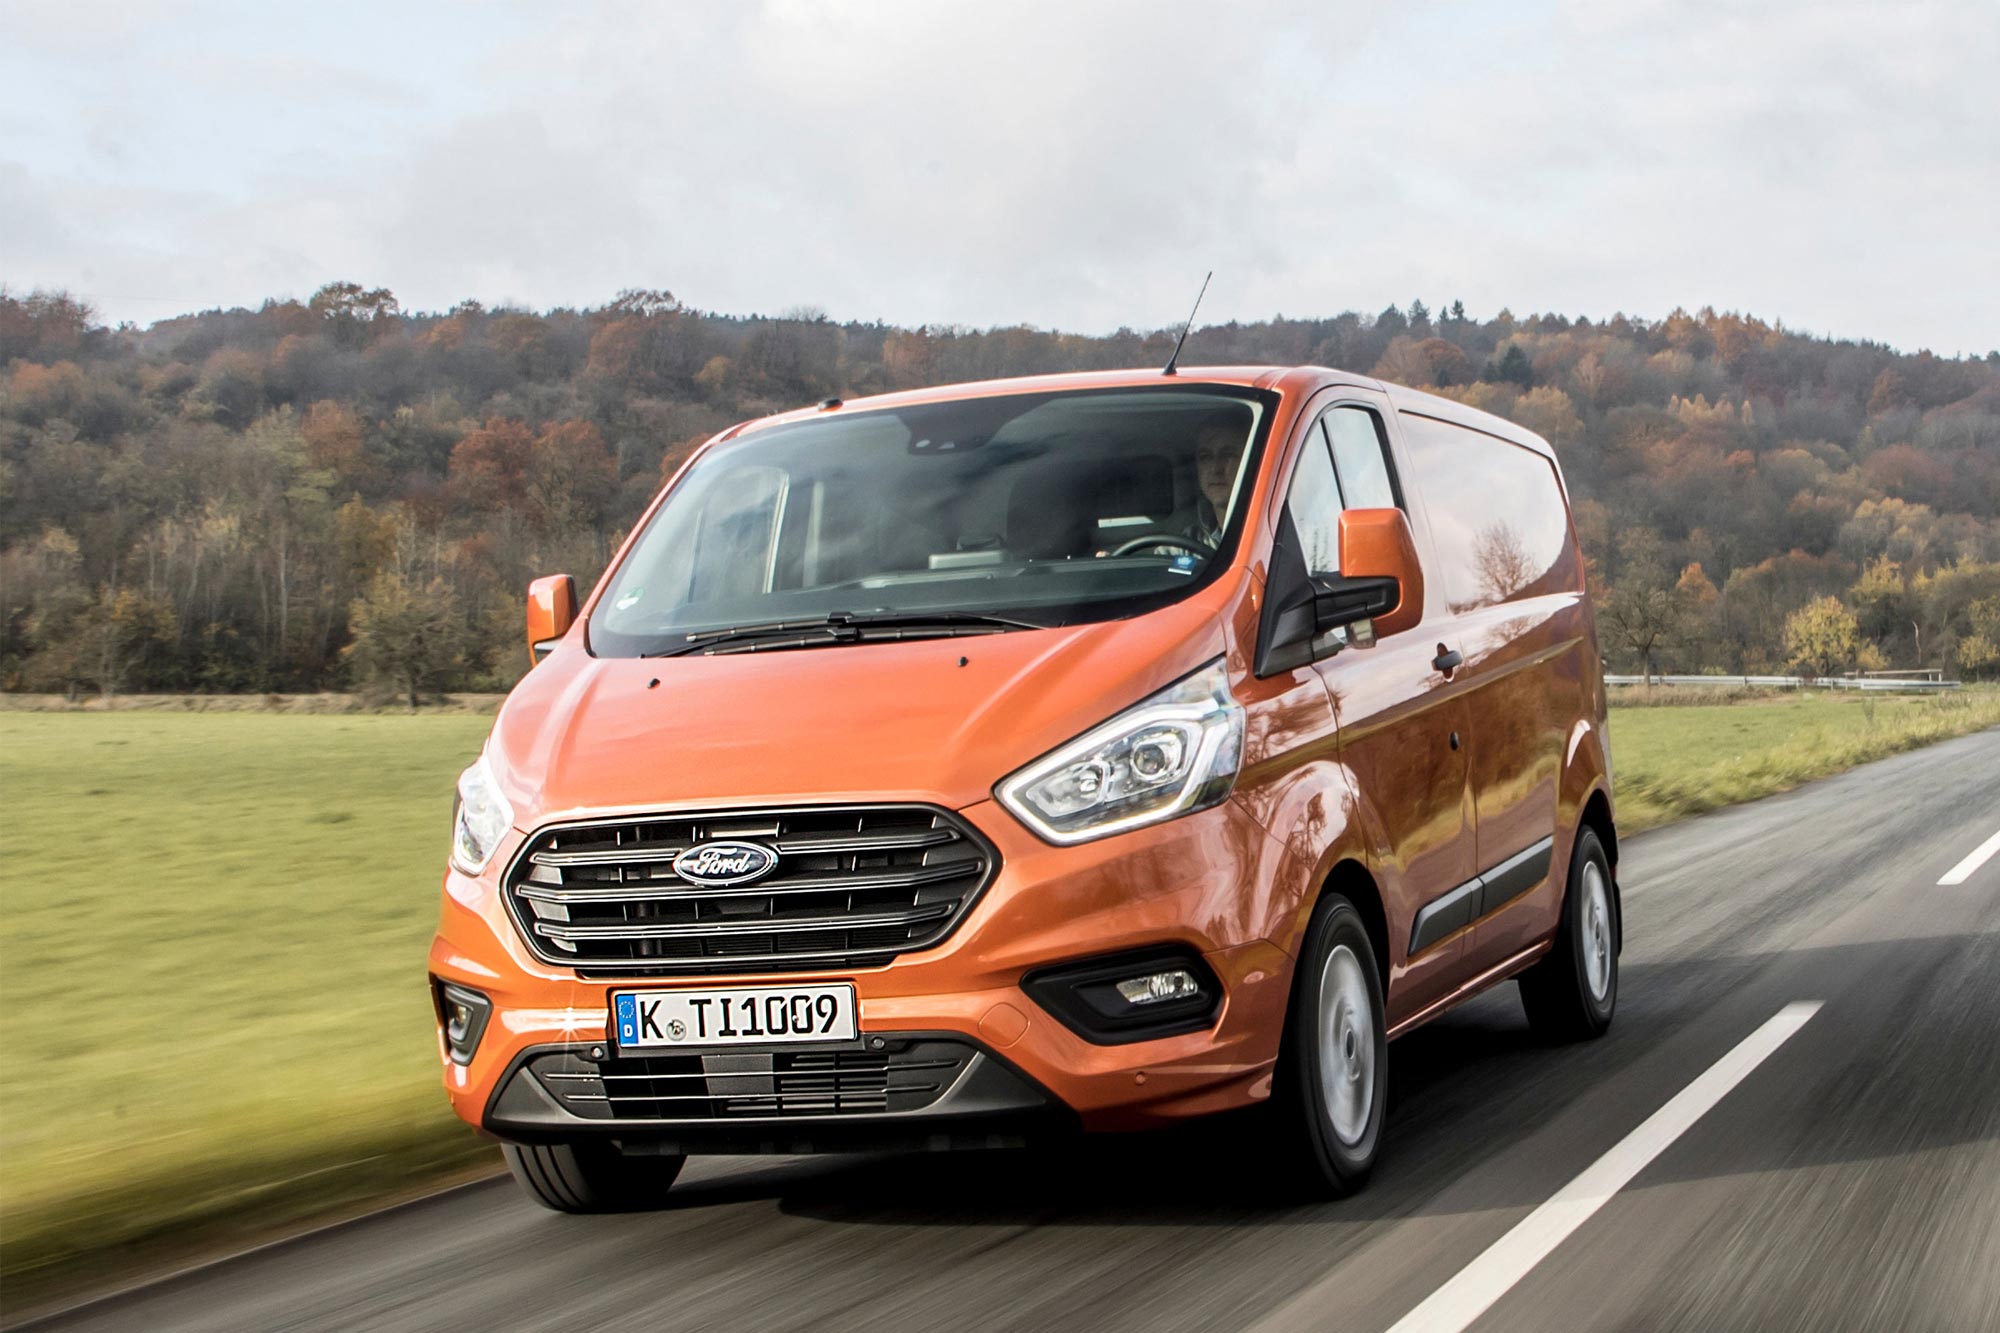 Η Ford στην πρώτη θέση των πωλήσεων ελαφρών επαγγελματικών αυτοκινήτων στην Ελλάδα